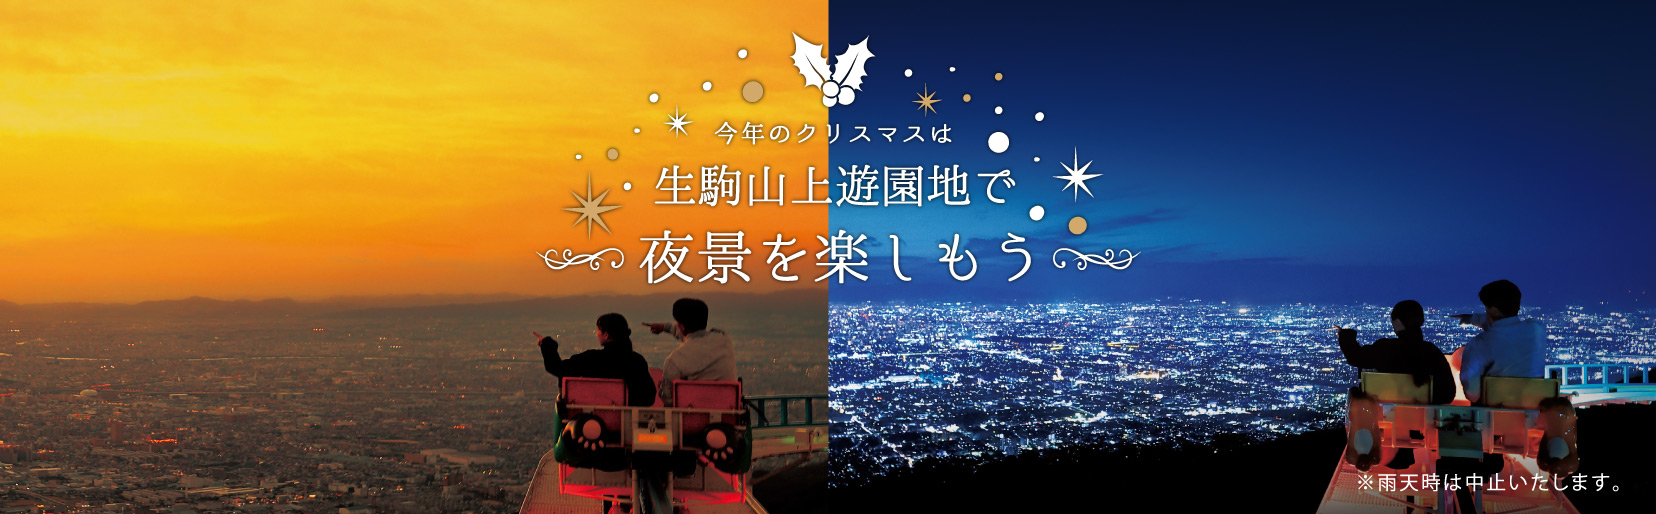 今年のクリスマスは生駒山上遊園地で夜景を楽しもう